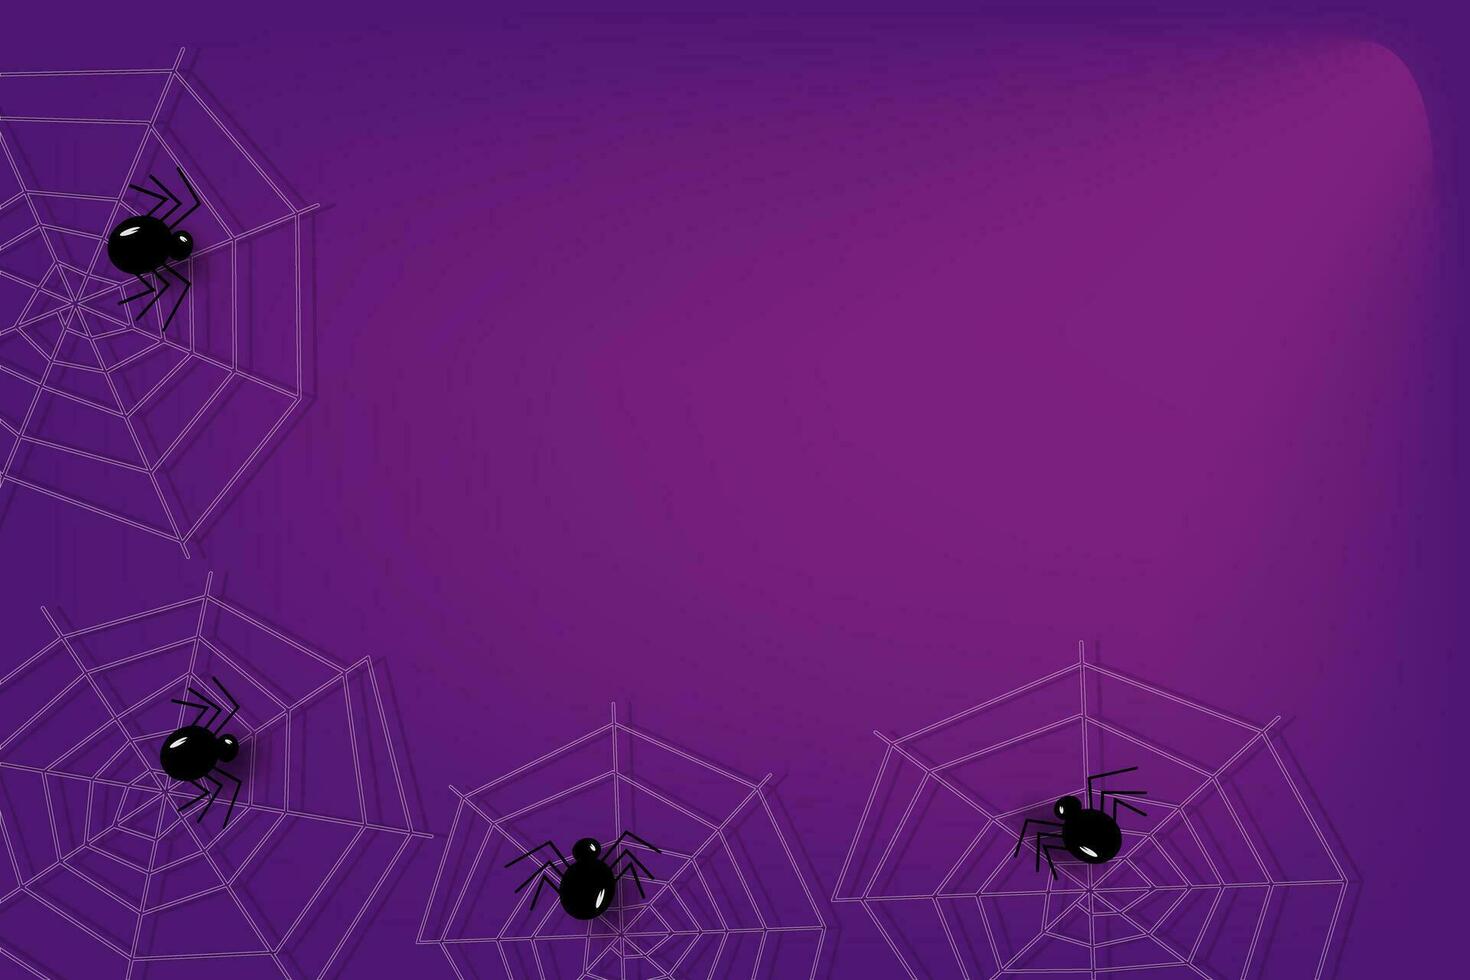 abstrakt bakgrund för halloween i trendig lila färger med spindelnät, spindlar och en stråle av ljus vektor